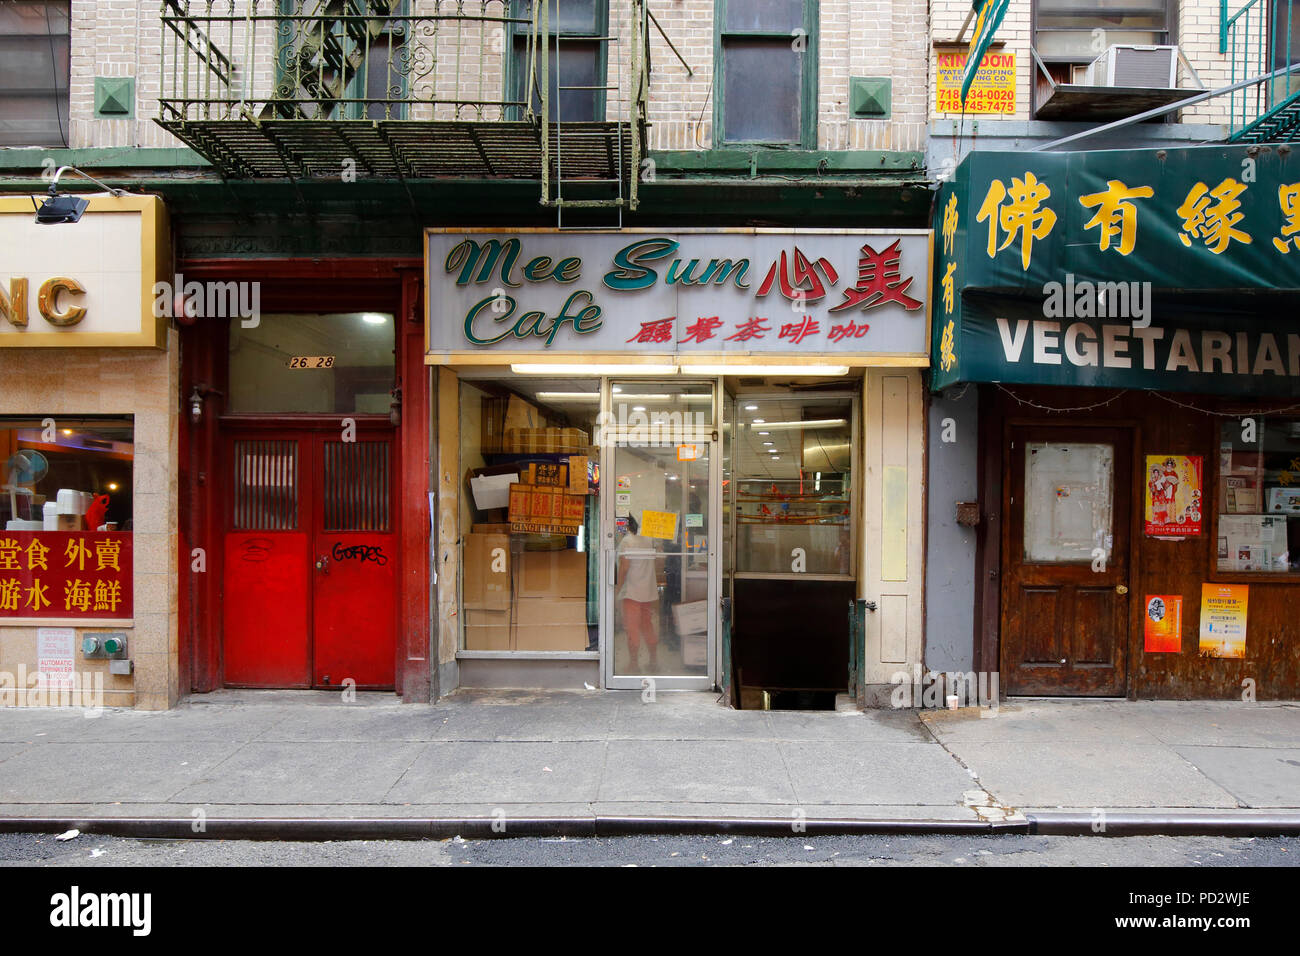 MEE Sum Cafe 美心, 26 Pell St, New York, NY. Außenfassade eines Coffee Shops im Chinatown Viertel von Manhattan. Stockfoto